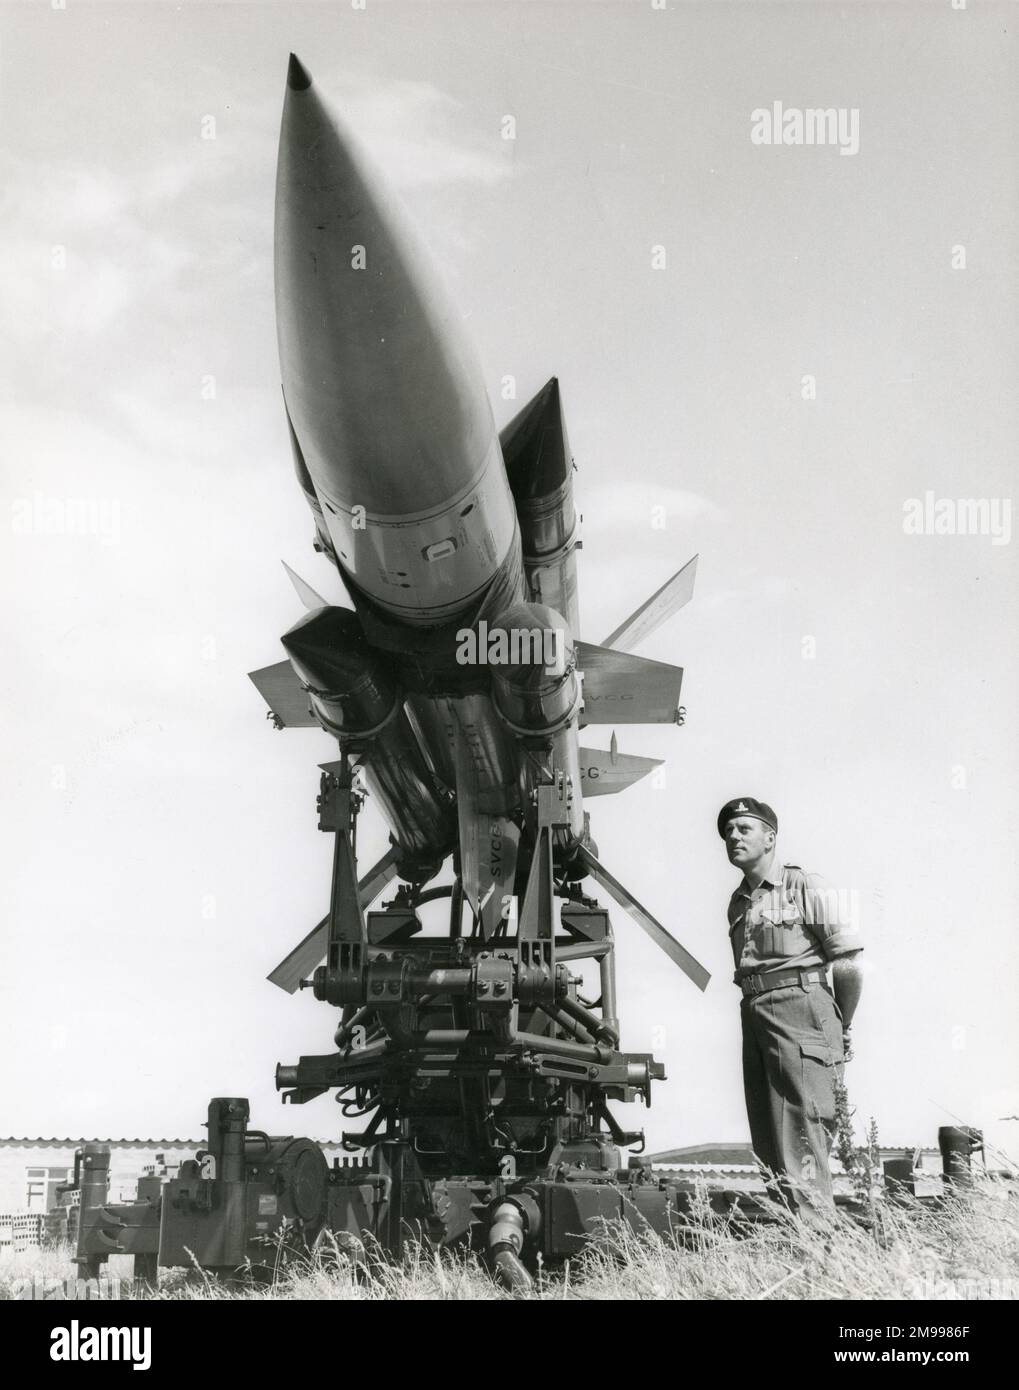 Le Sgt Leslie Williams du Régiment d'armes guidées 32nd de l'Artillerie royale de Ty Croes, au nord du pays de Galles, pendant l'entraînement avec le missile guidé surface-air de l'oiseau-tonnerre électrique anglais, 16 juillet 1961. Banque D'Images